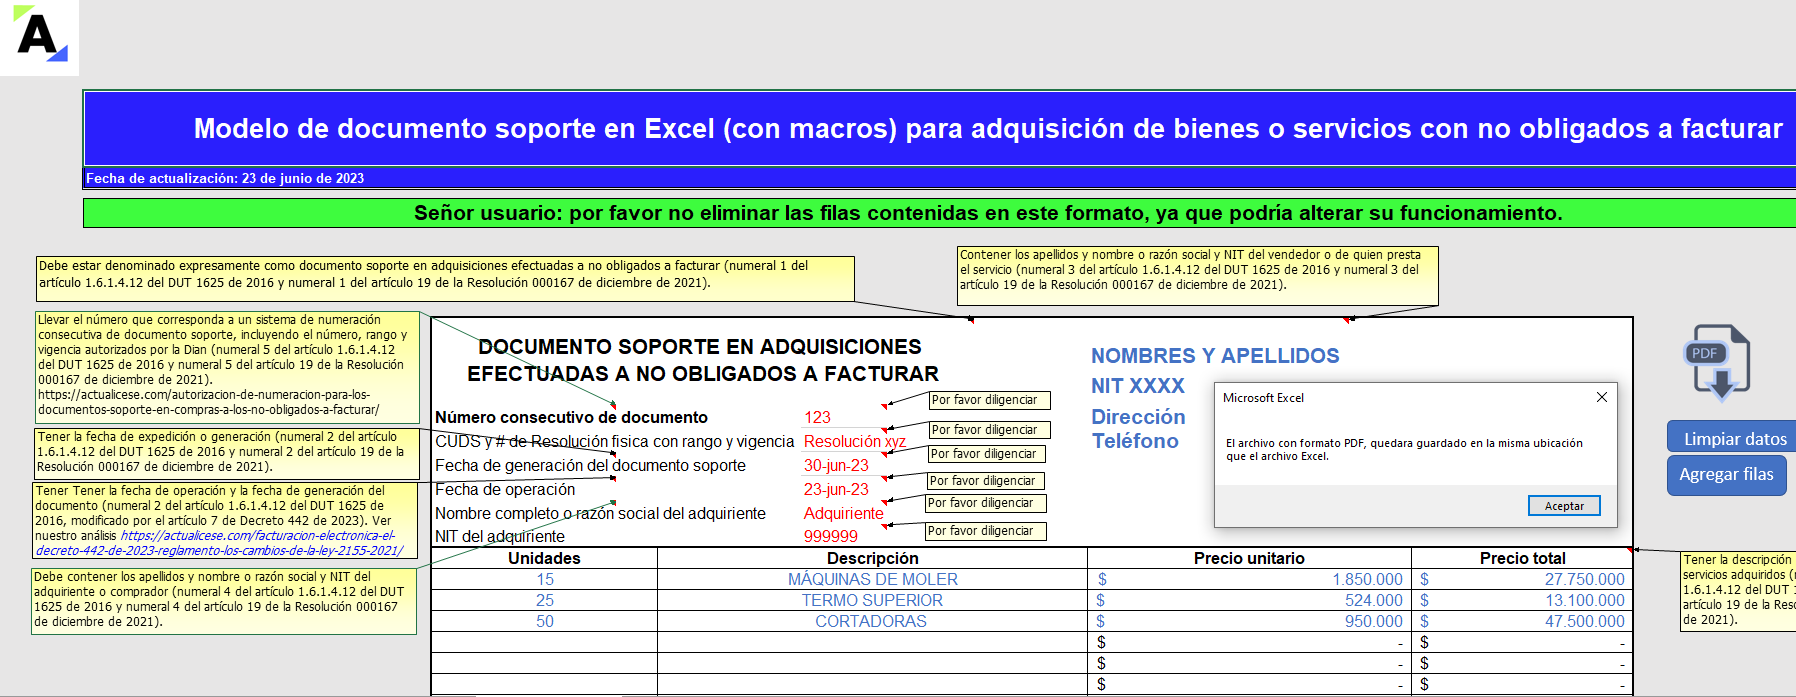 Modelo en Excel (con macros) del documento soporte para operaciones con no obligados a facturar